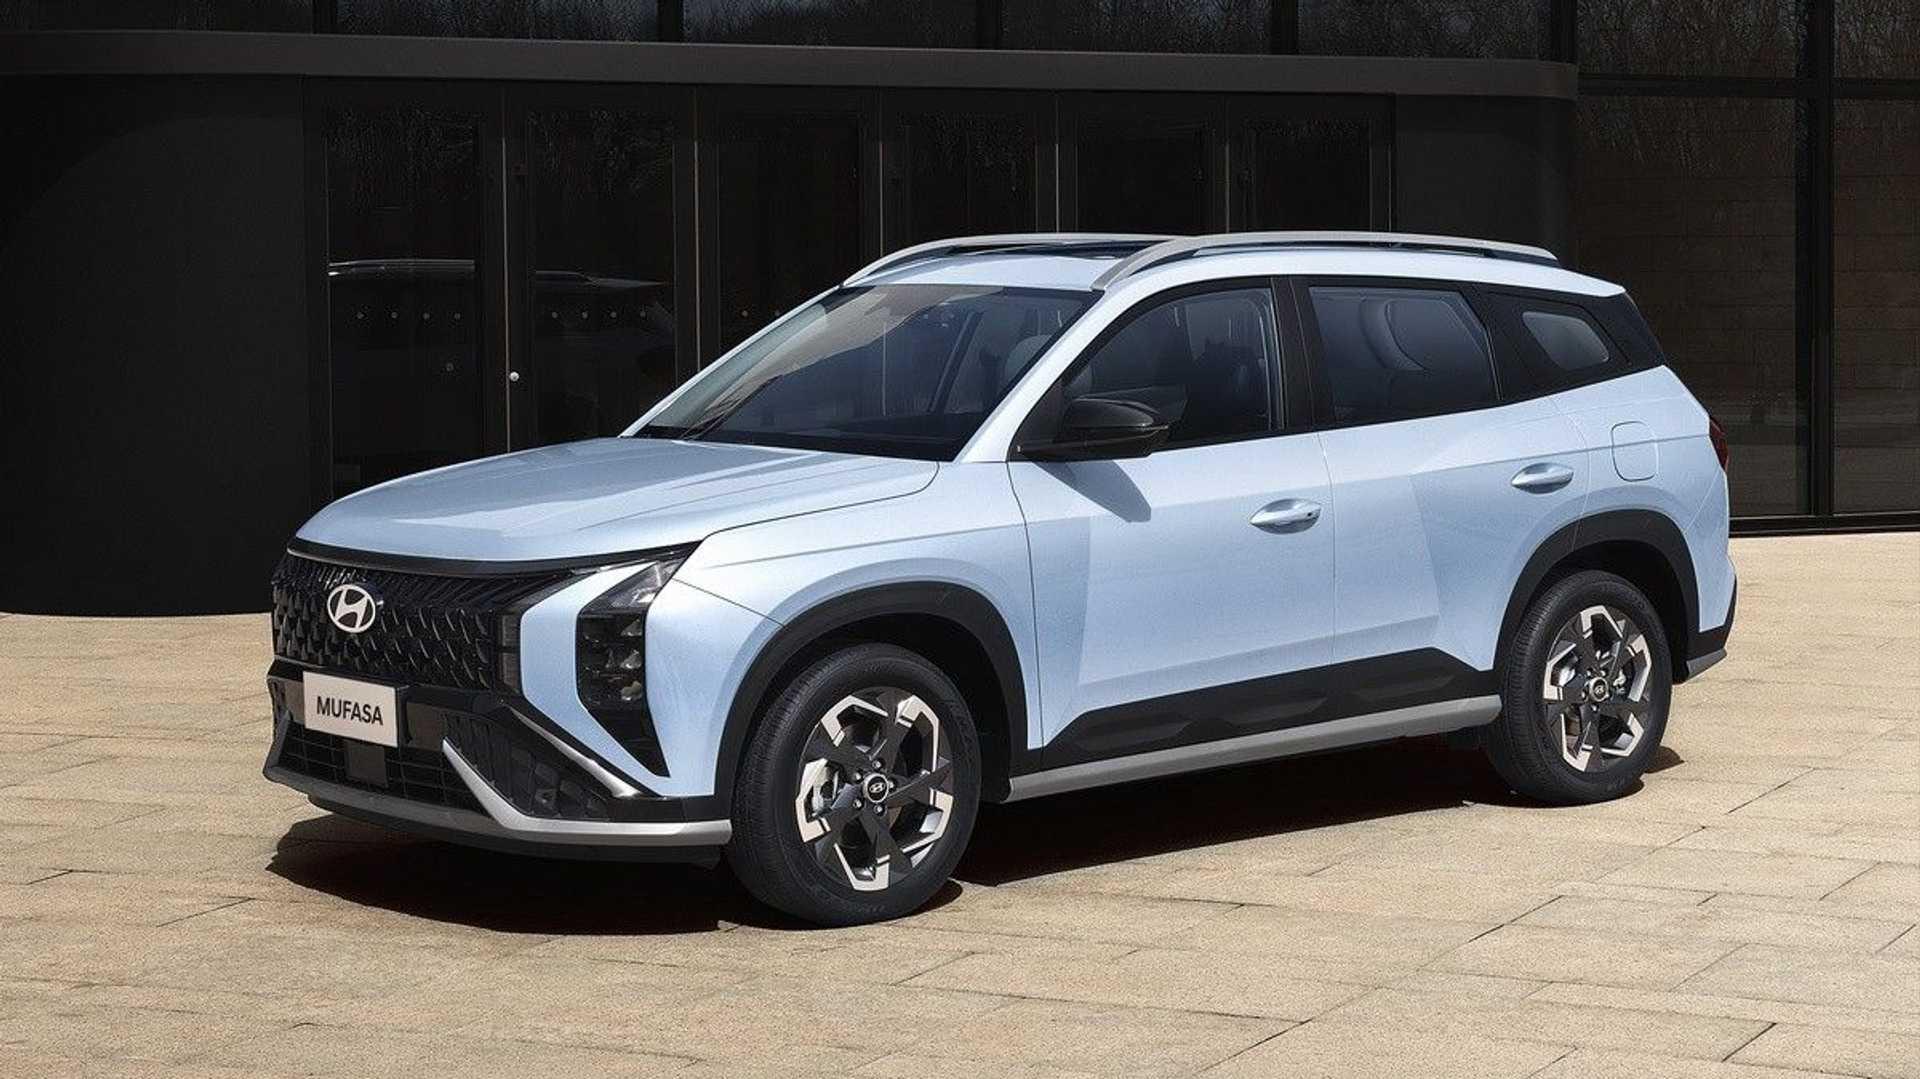 Ảnh chi tiết Hyundai Mufasa: Cùng cỡ Tucson, thiết kế dị, đèn hậu lần đầu xuất hiện